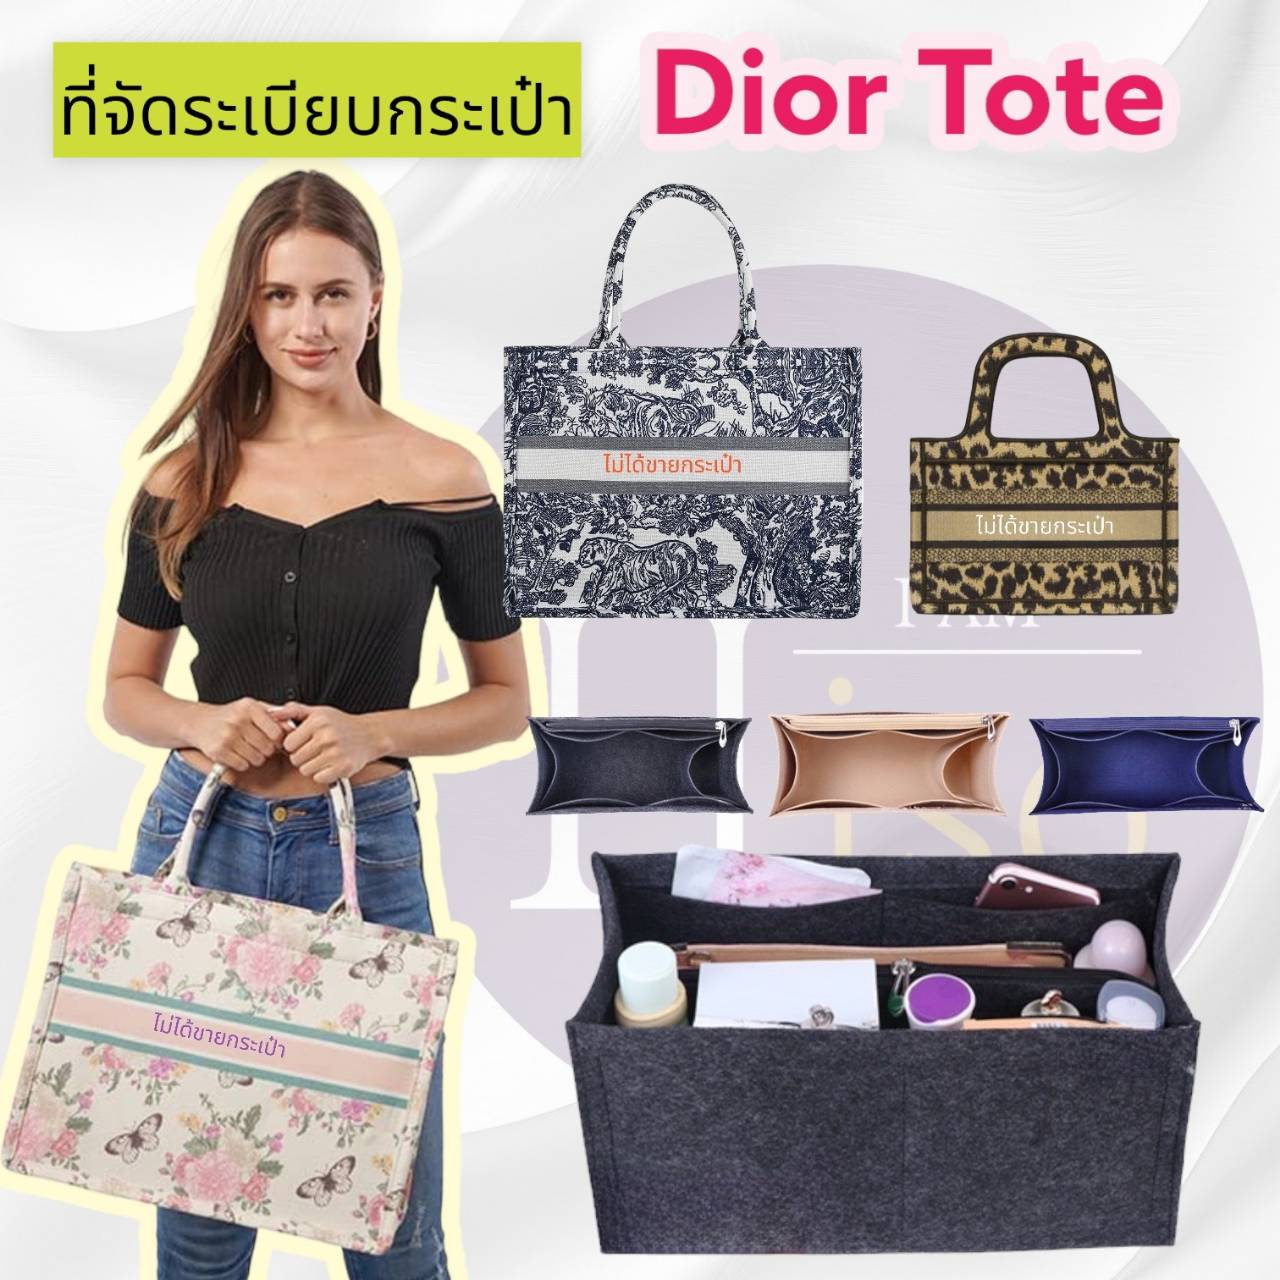 ที่จัดระเบียบกระเป๋า กระเป๋าจัดระเบียบ Dior Tote ดิออ จัดระเบียบ ดิออร์ ดันทรงกระเป๋า Dior book tote พร้อมส่งจากไทย